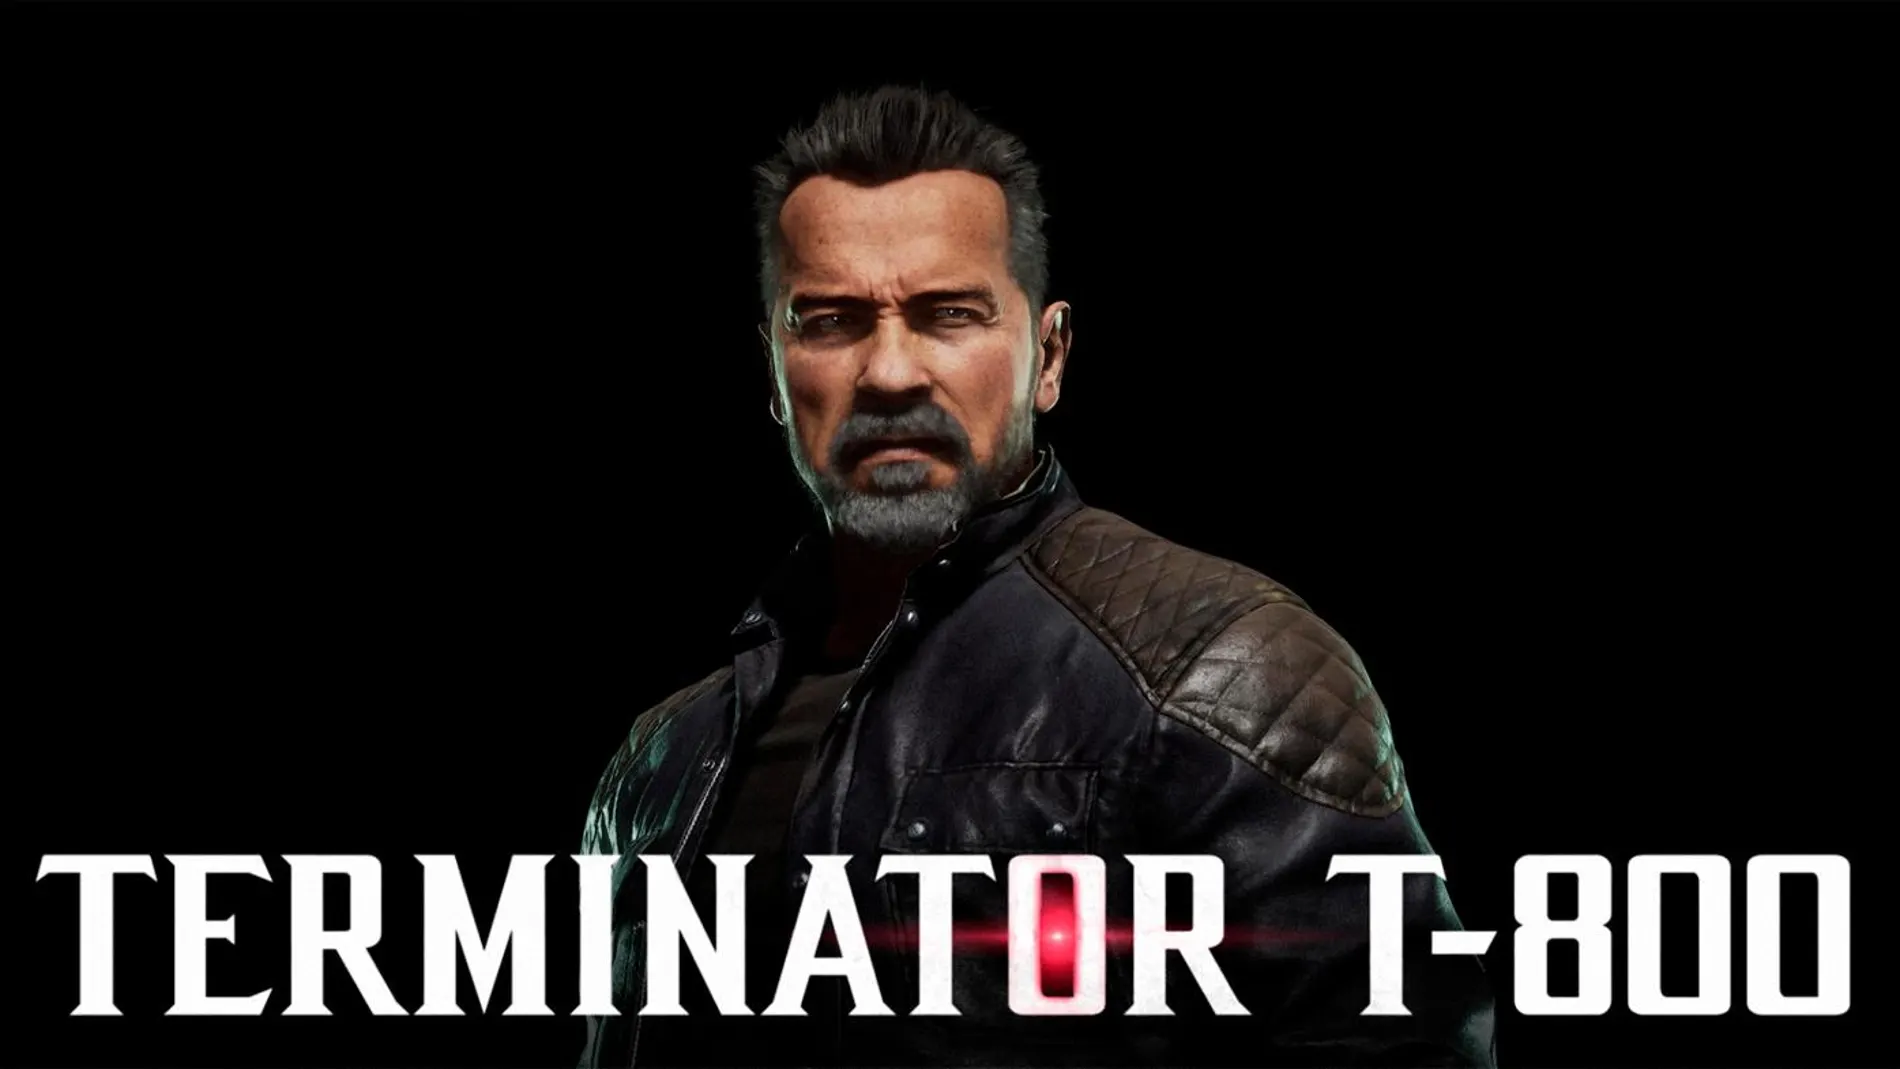 El asesino cibernético definitivo adopta el aspecto del actor Arnold Schwarzenegger